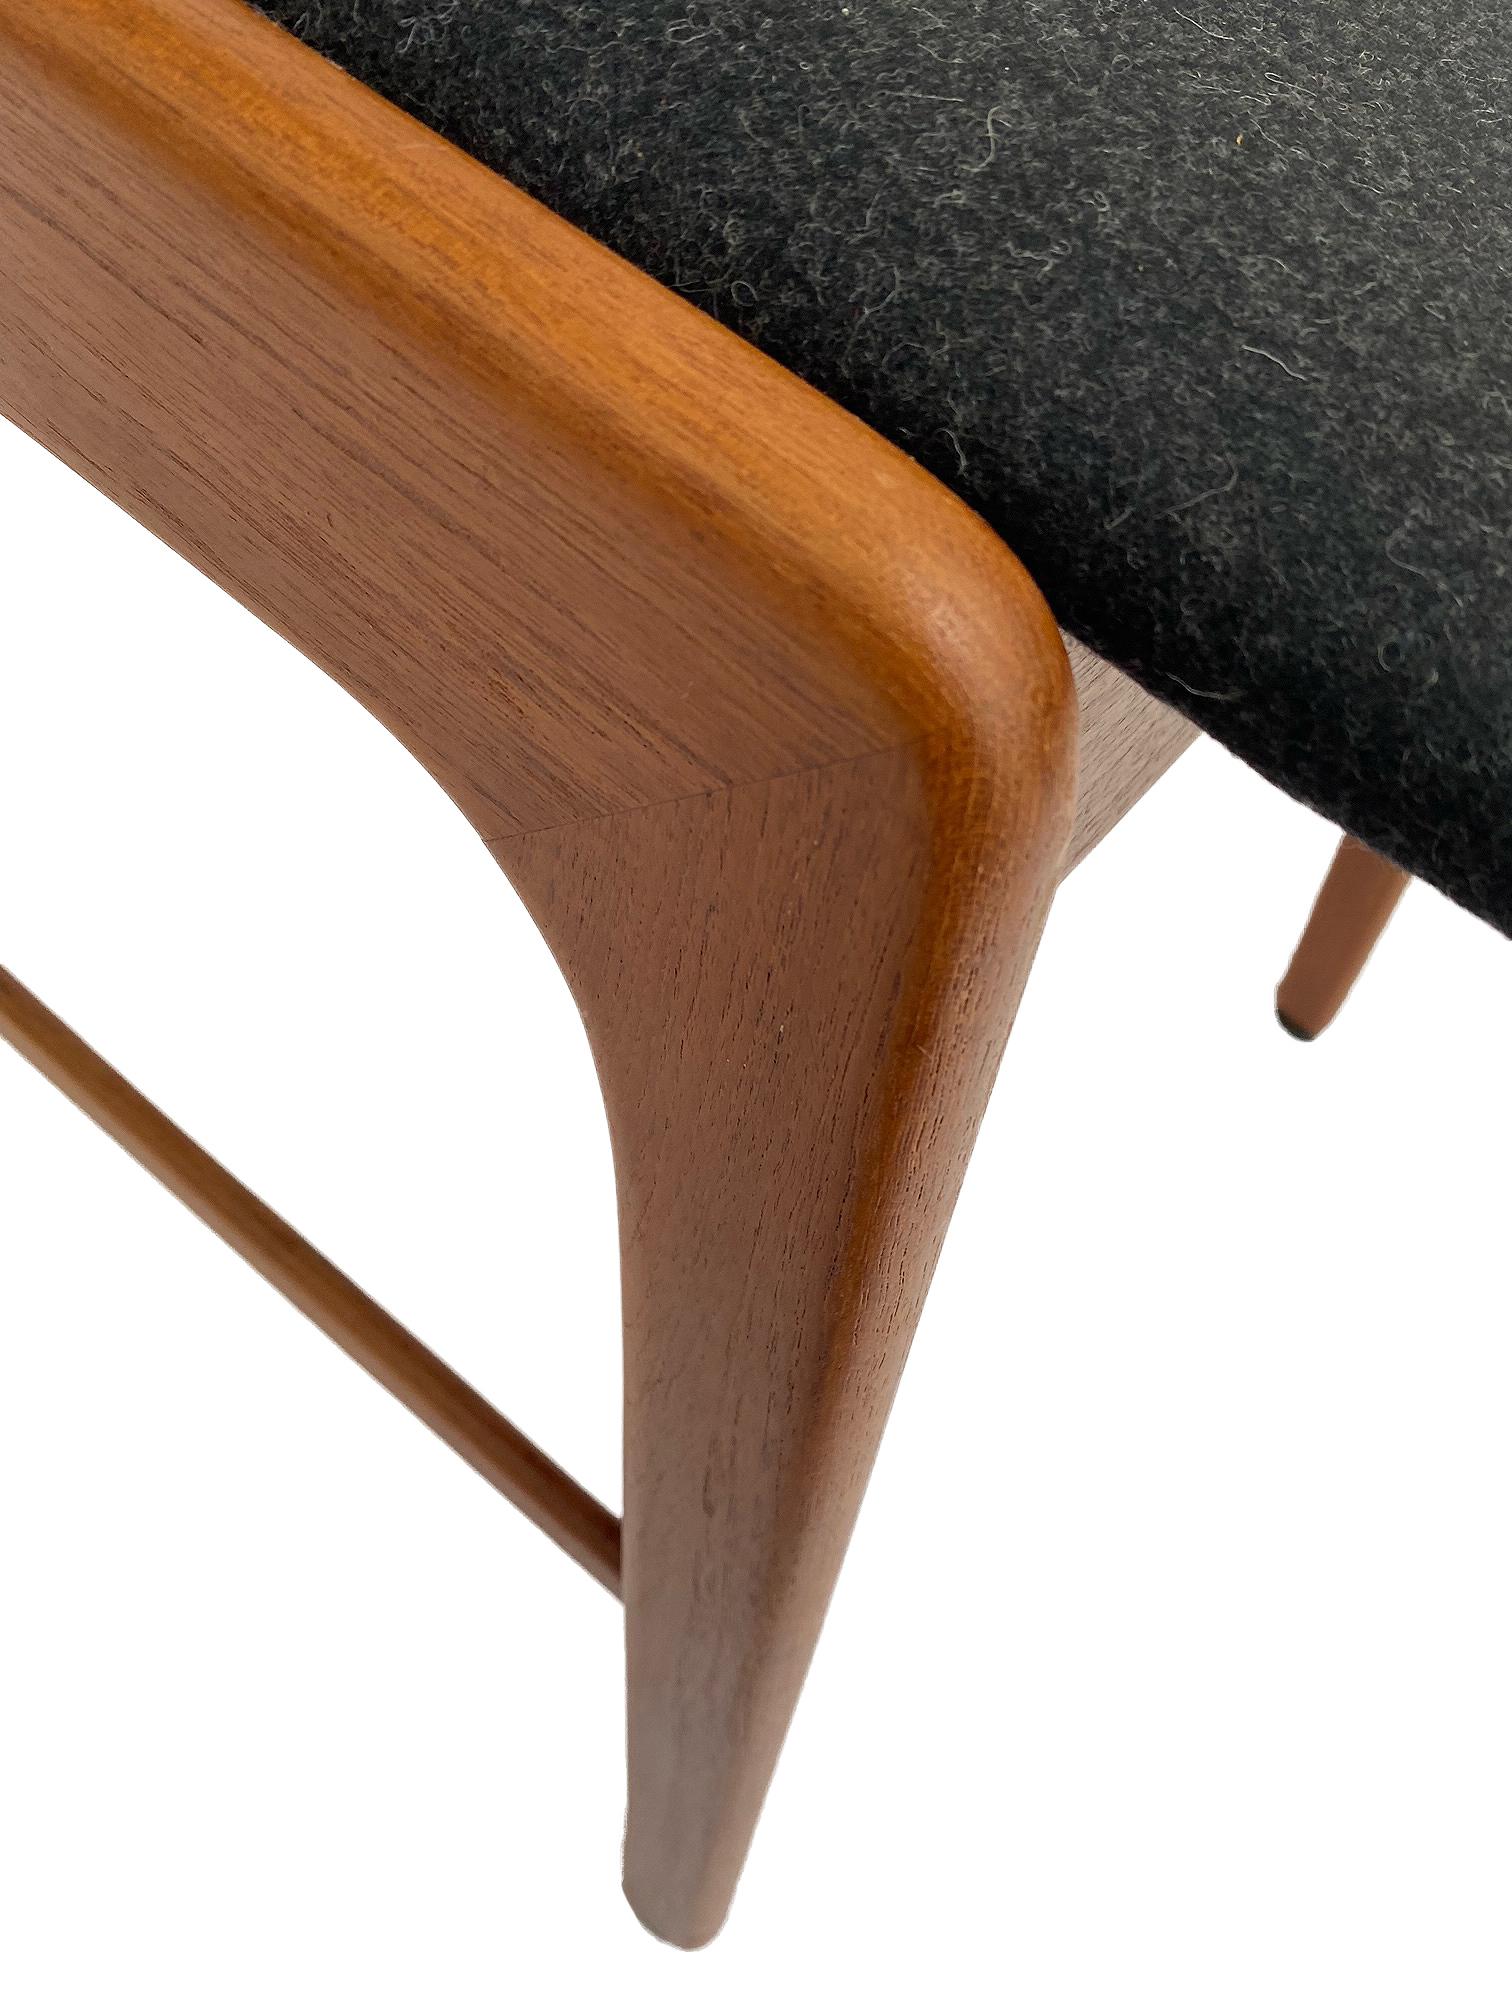 Kai Kristiansen Model 32 Teak and Charcoal Wool Desk Chair, Denmark, 1960s 8